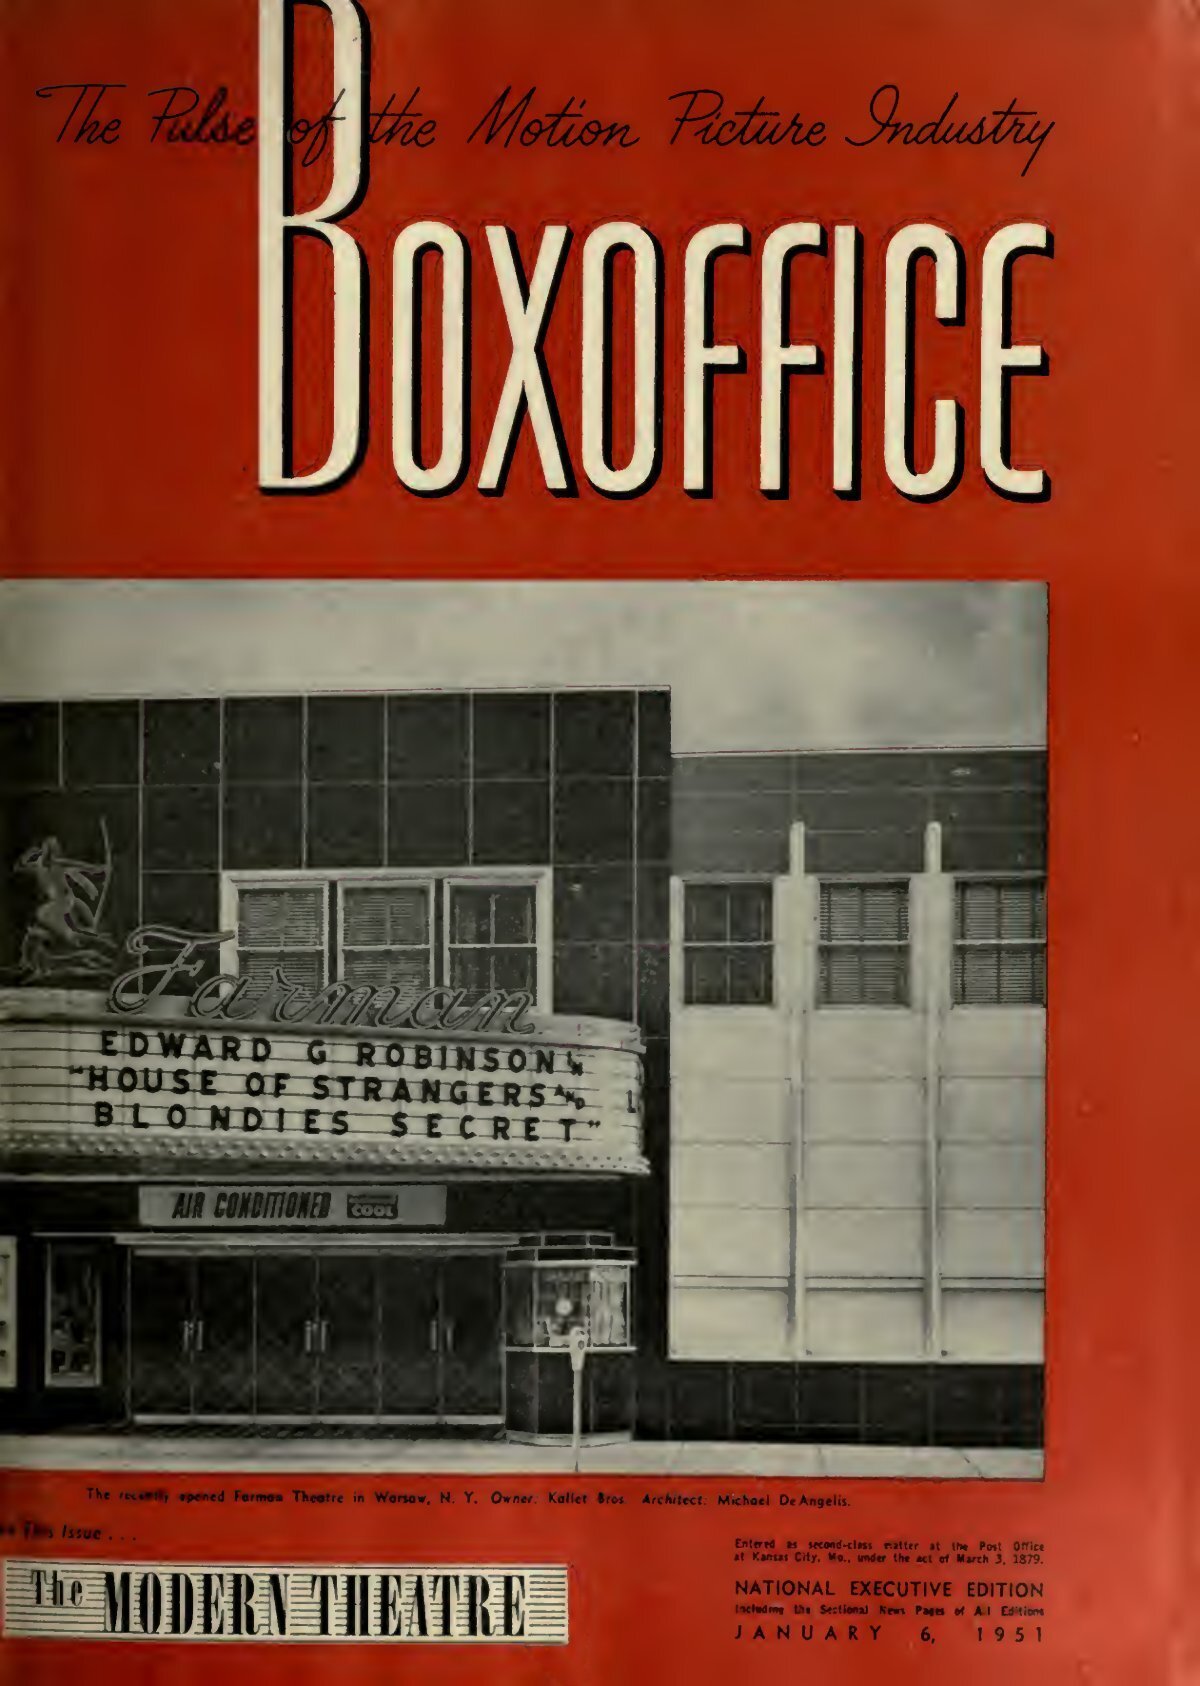 Boxoffice-January.06.1951